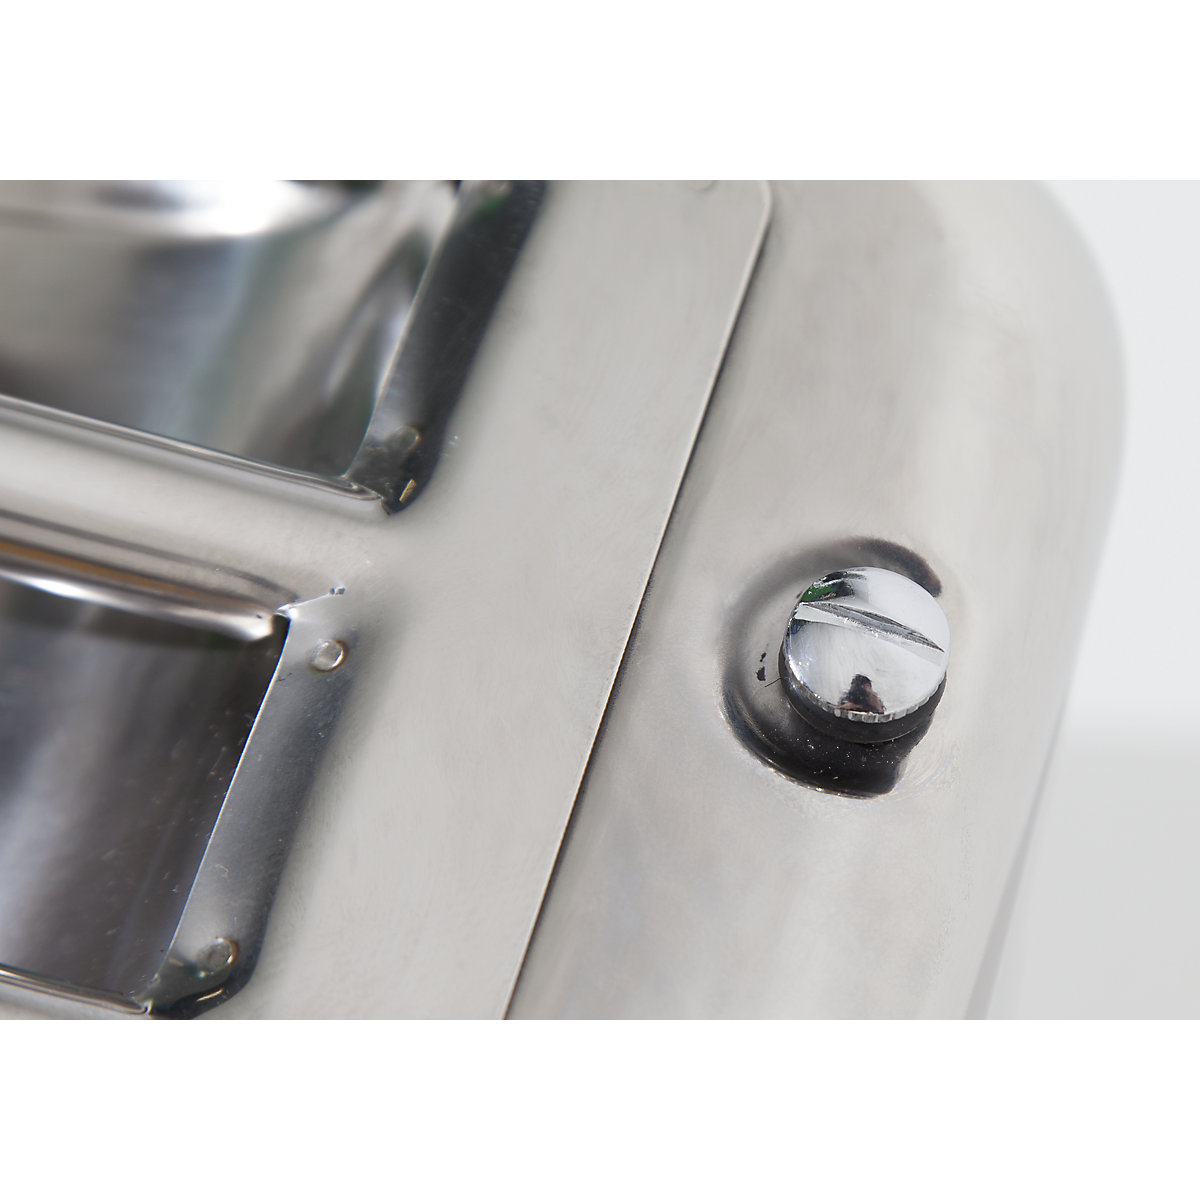 Canistră de siguranță cu robinet pentru dozare fină – FALCON (Imagine produs 7)-6